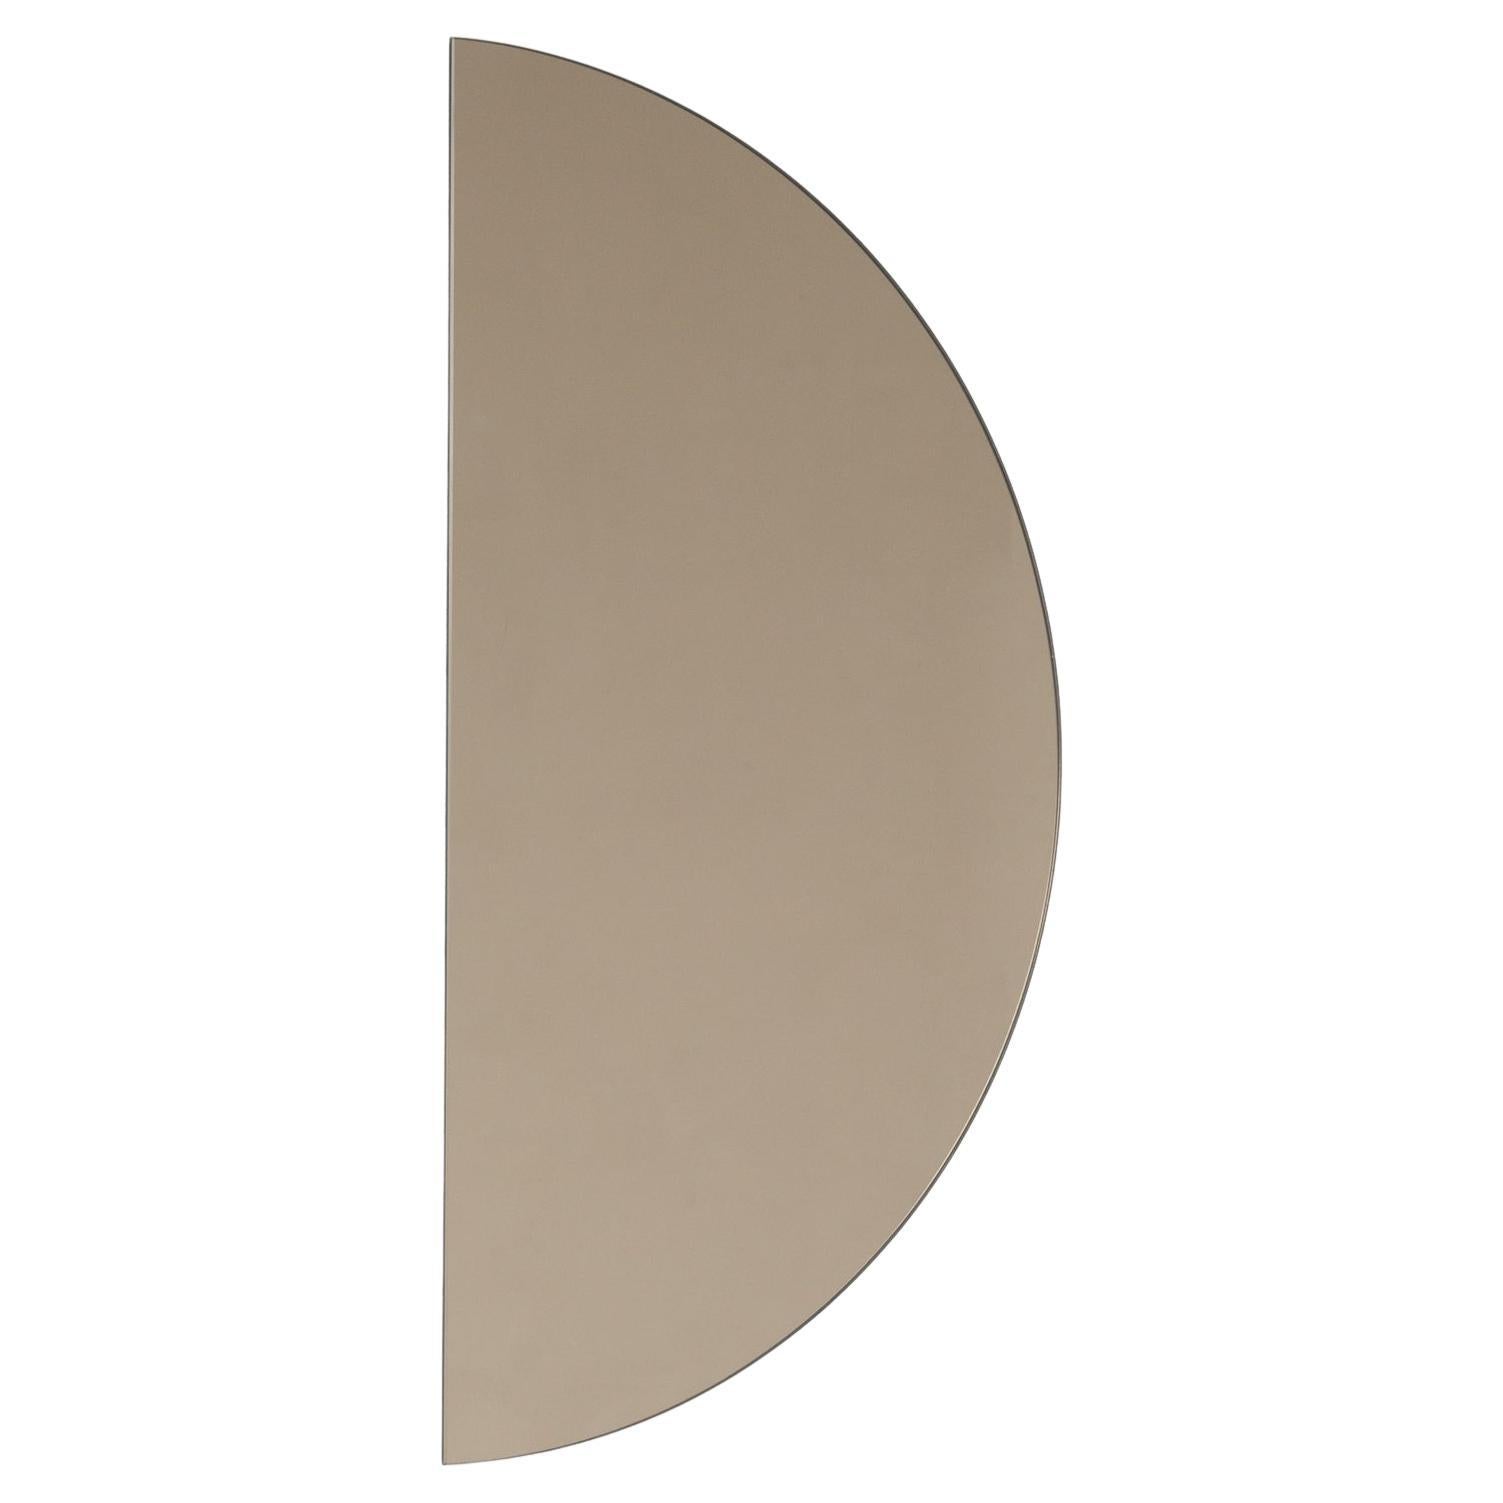 Luna Halbmond, halbkreisförmiger, bronzefarben getönter, minimalistischer Rahmenspiegel, mittelgroß